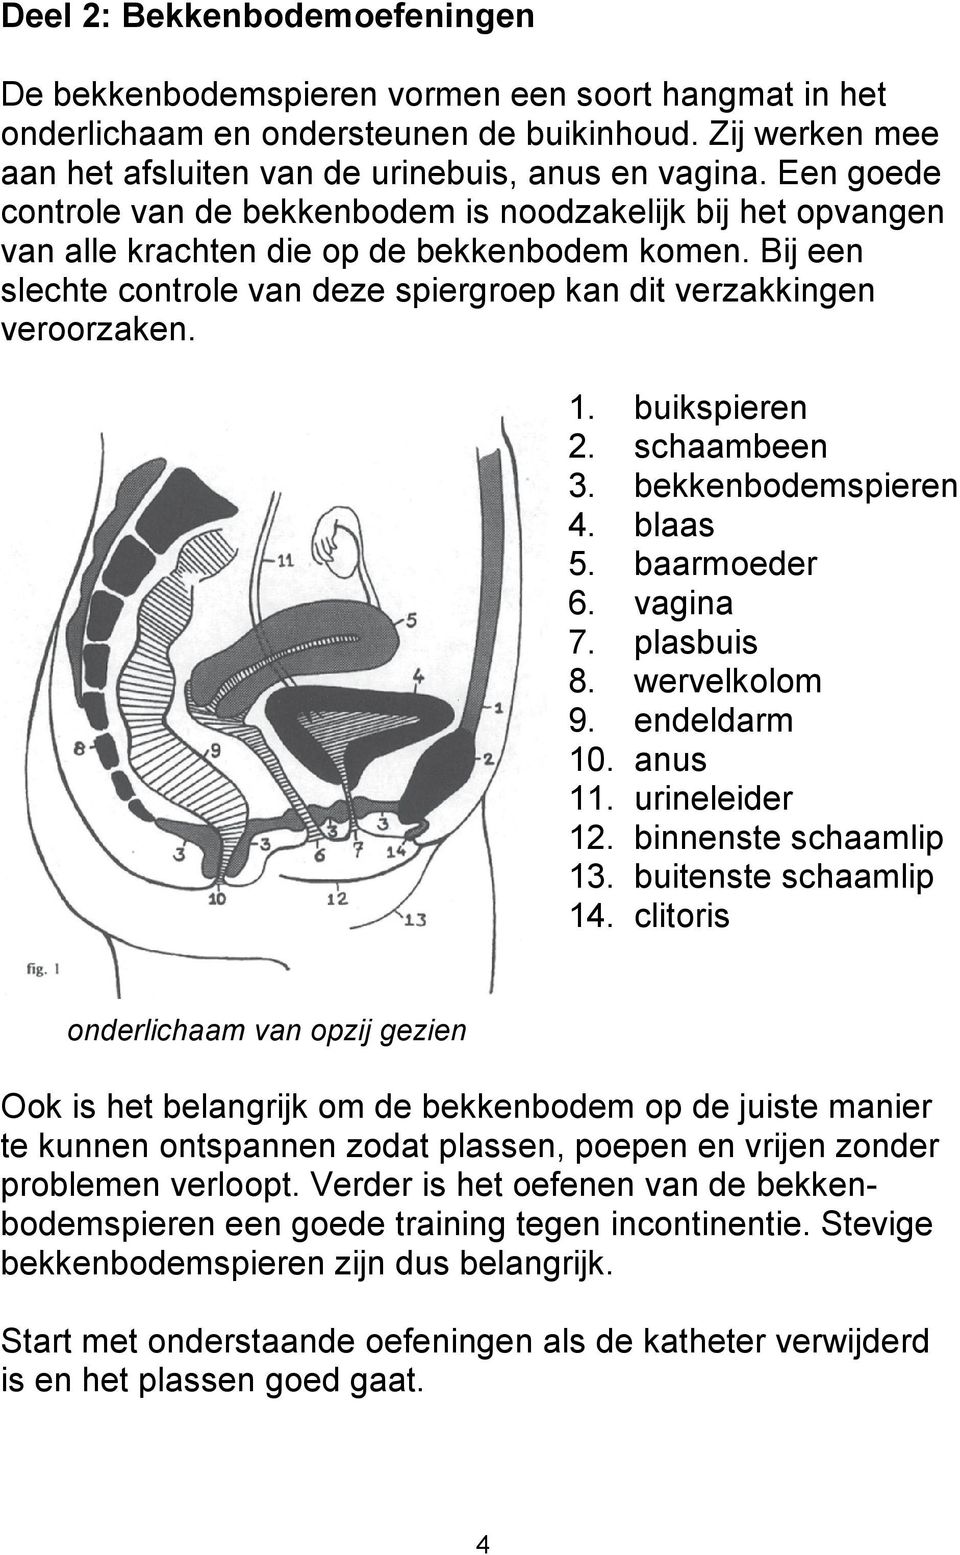 buikspieren 2. schaambeen 3. bekkenbodemspieren 4. blaas 5. baarmoeder 6. vagina 7. plasbuis 8. wervelkolom 9. endeldarm 10. anus 11. urineleider 12. binnenste schaamlip 13. buitenste schaamlip 14.